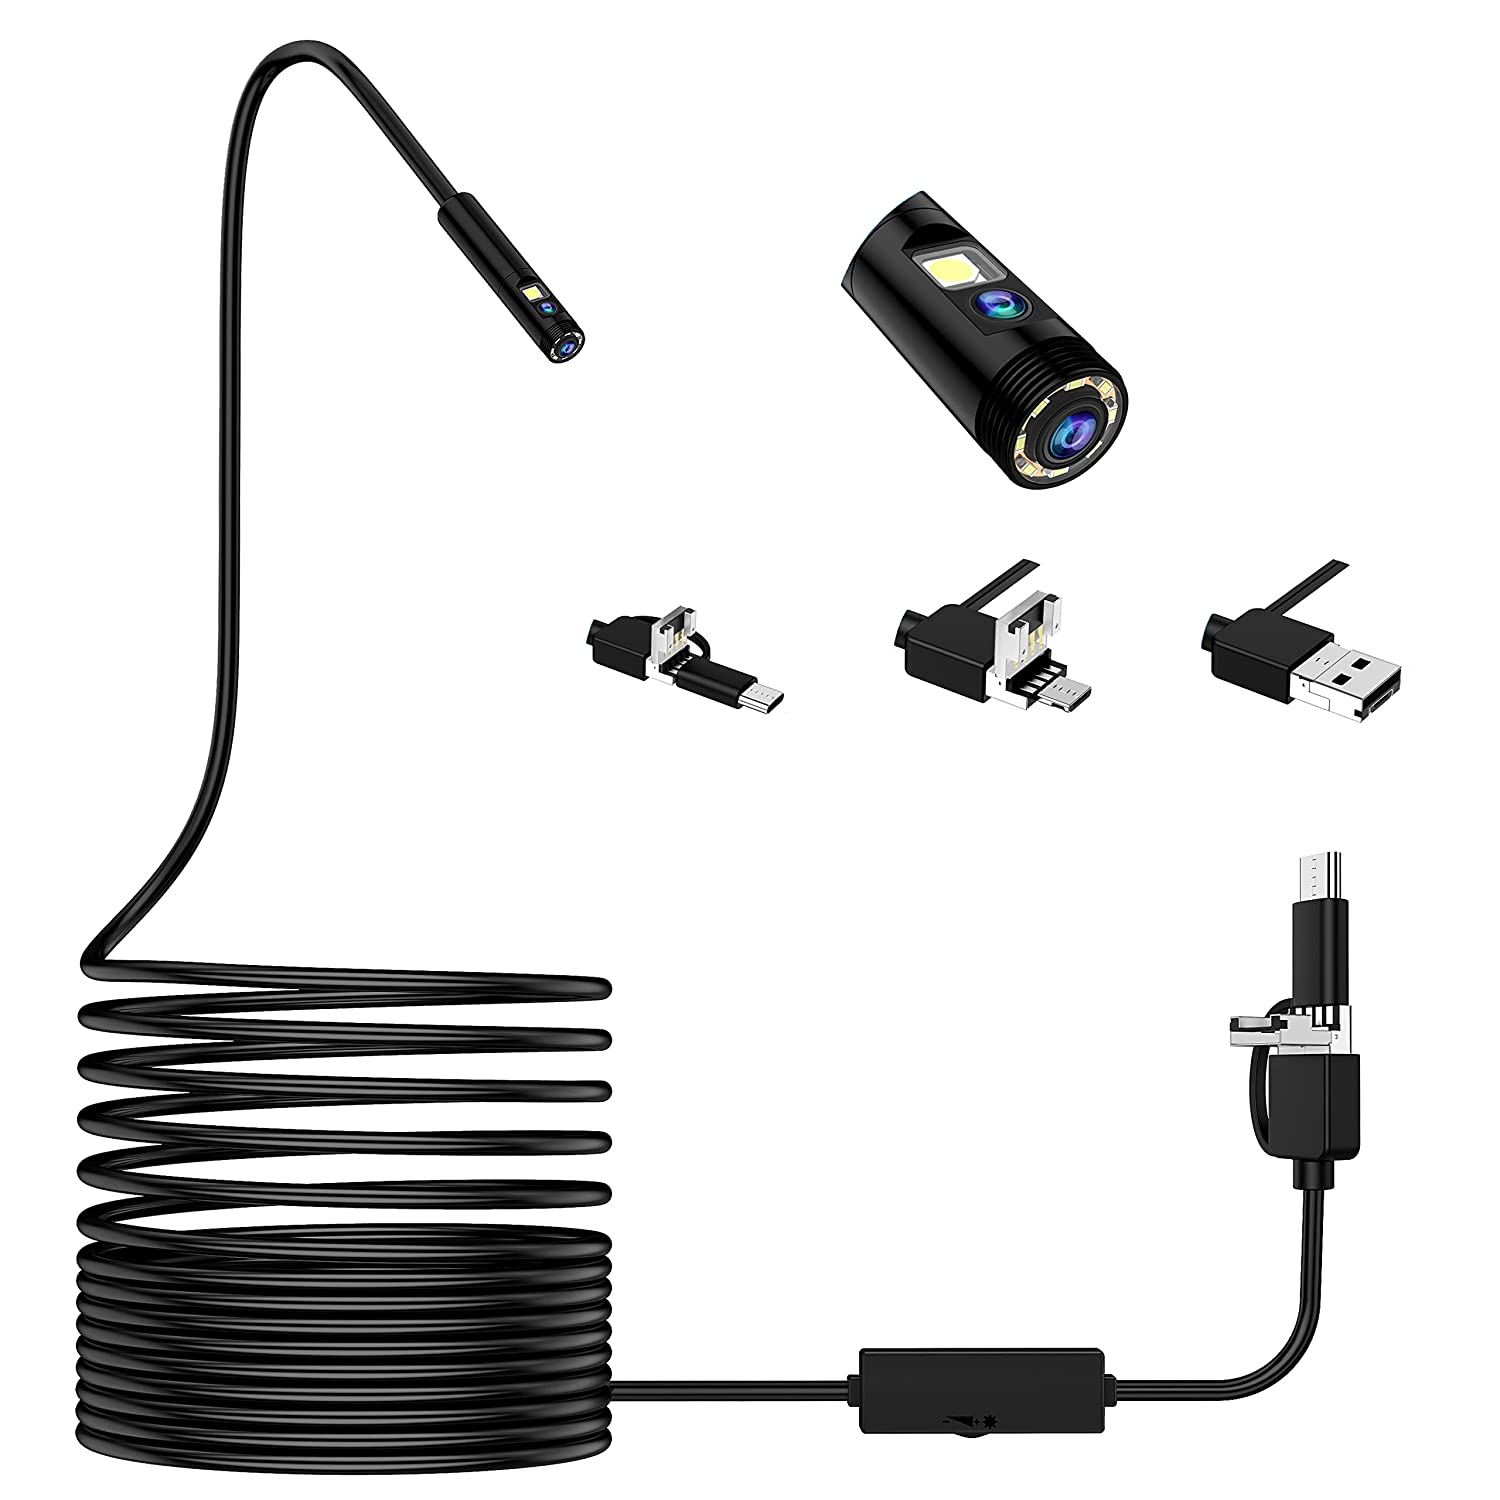 Bild zu Lightswim Dual Lens 3-in-1 USB-Endoskop für 19,95€